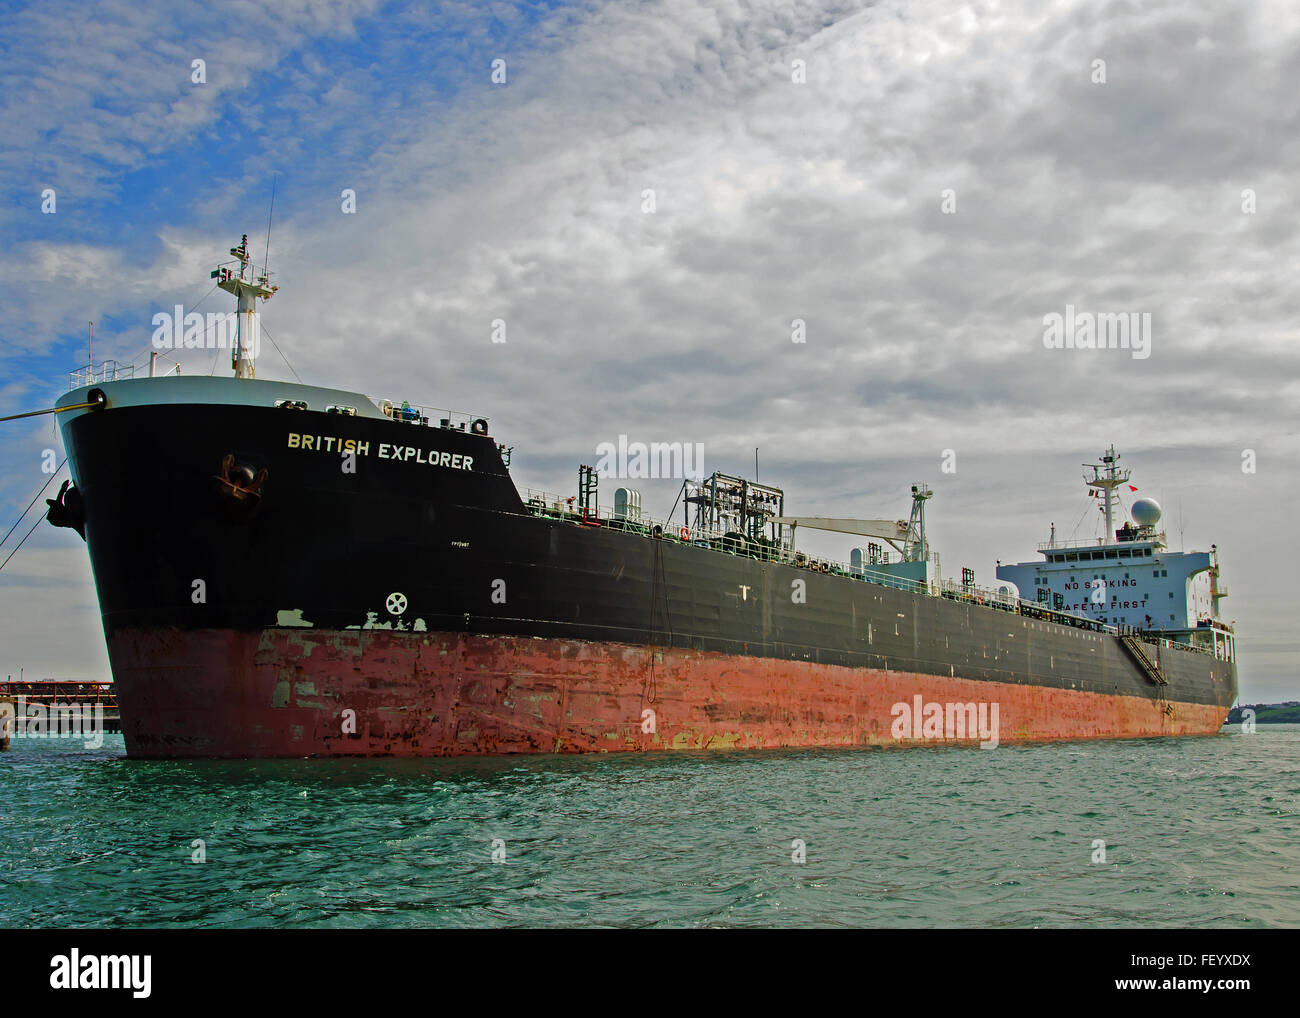 Riesige Öltanker bin / V britische Entdecker "vertäut am Whitegate Oil Terminal, Cork Harbour, Cobh Hafen von Cork, Irland. Stockfoto